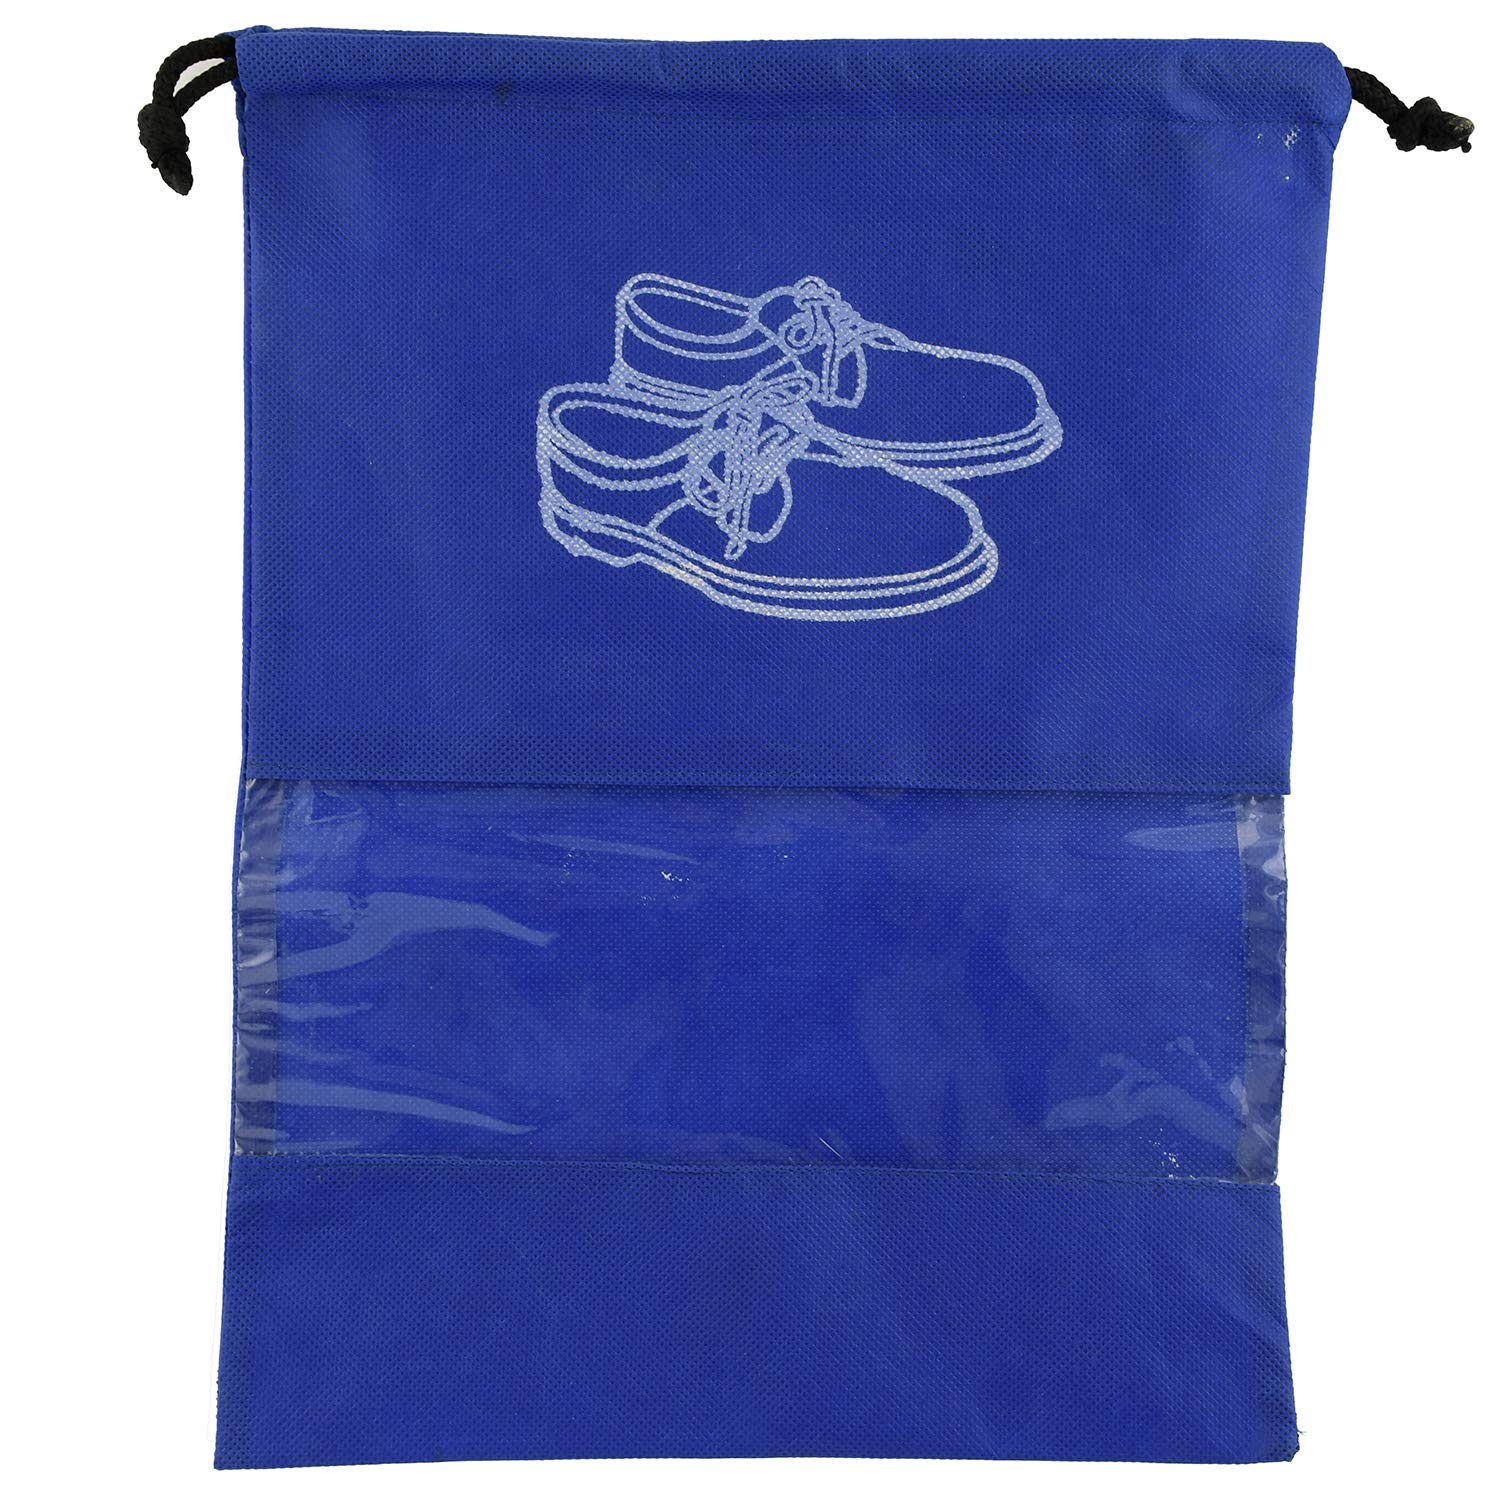 Heart Home 6 Piece Non Woven Travel Shoe Cover, String Bag Organizer, Royal Blue HEART5243, Standard